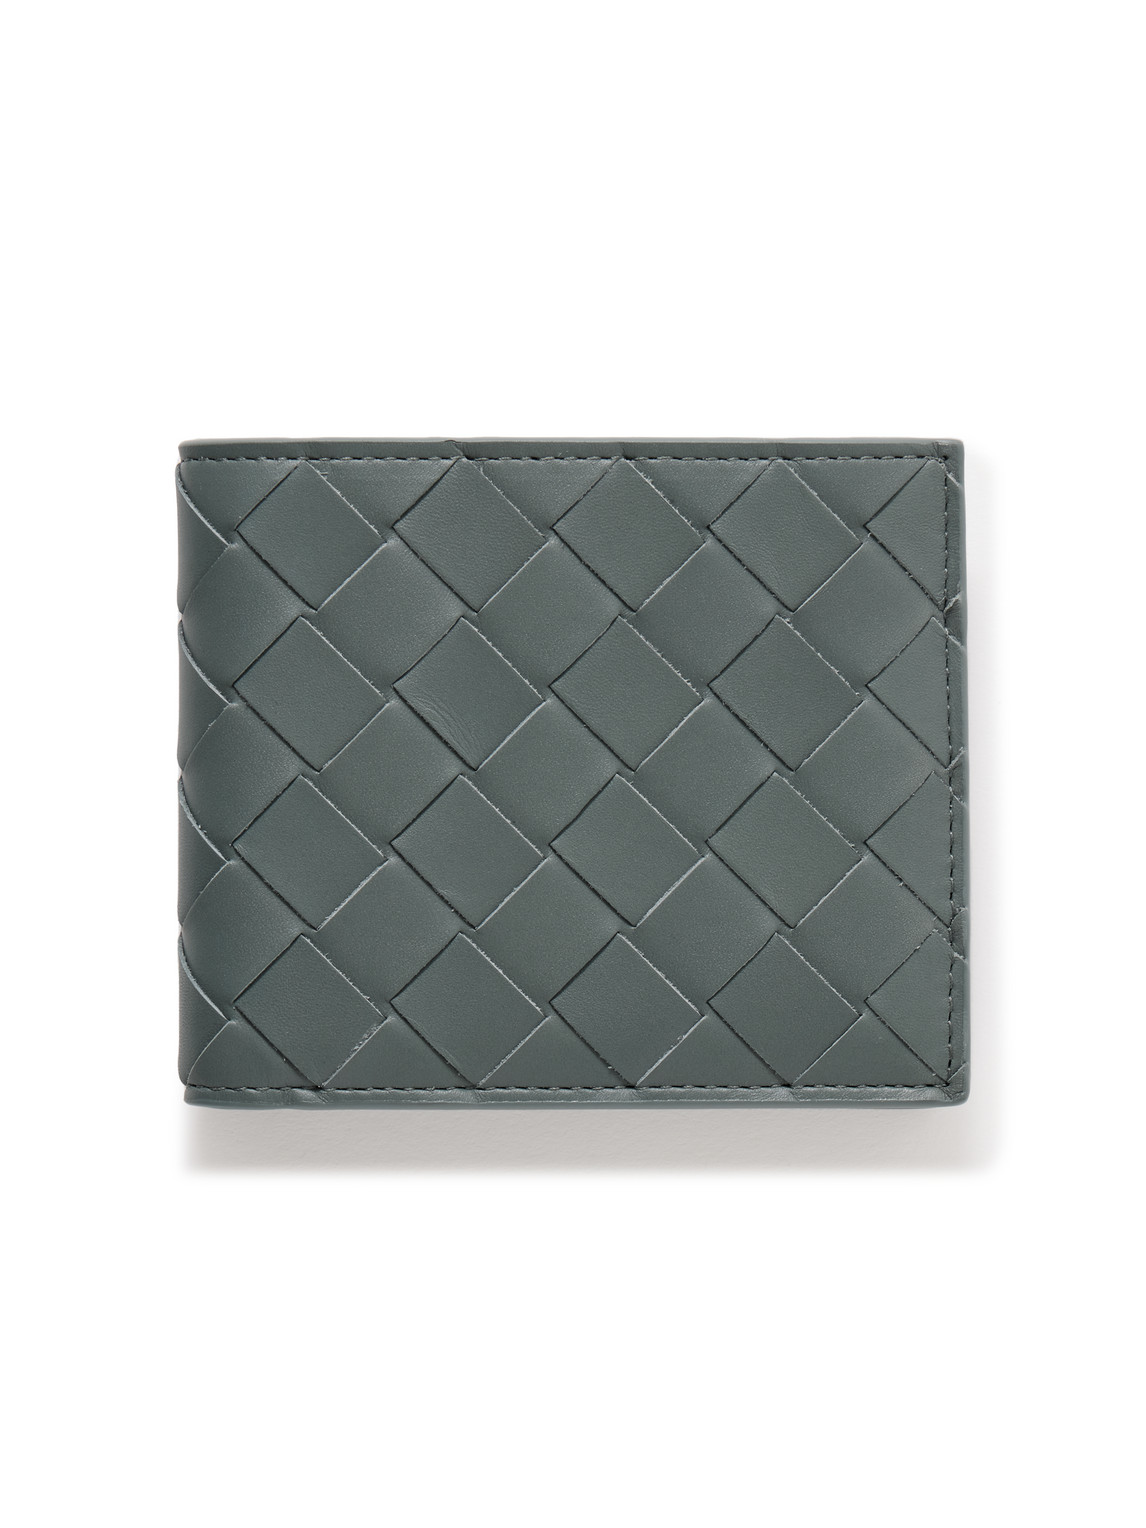 Bottega Veneta Intrecciato Leather Billfold Wallet In Gray